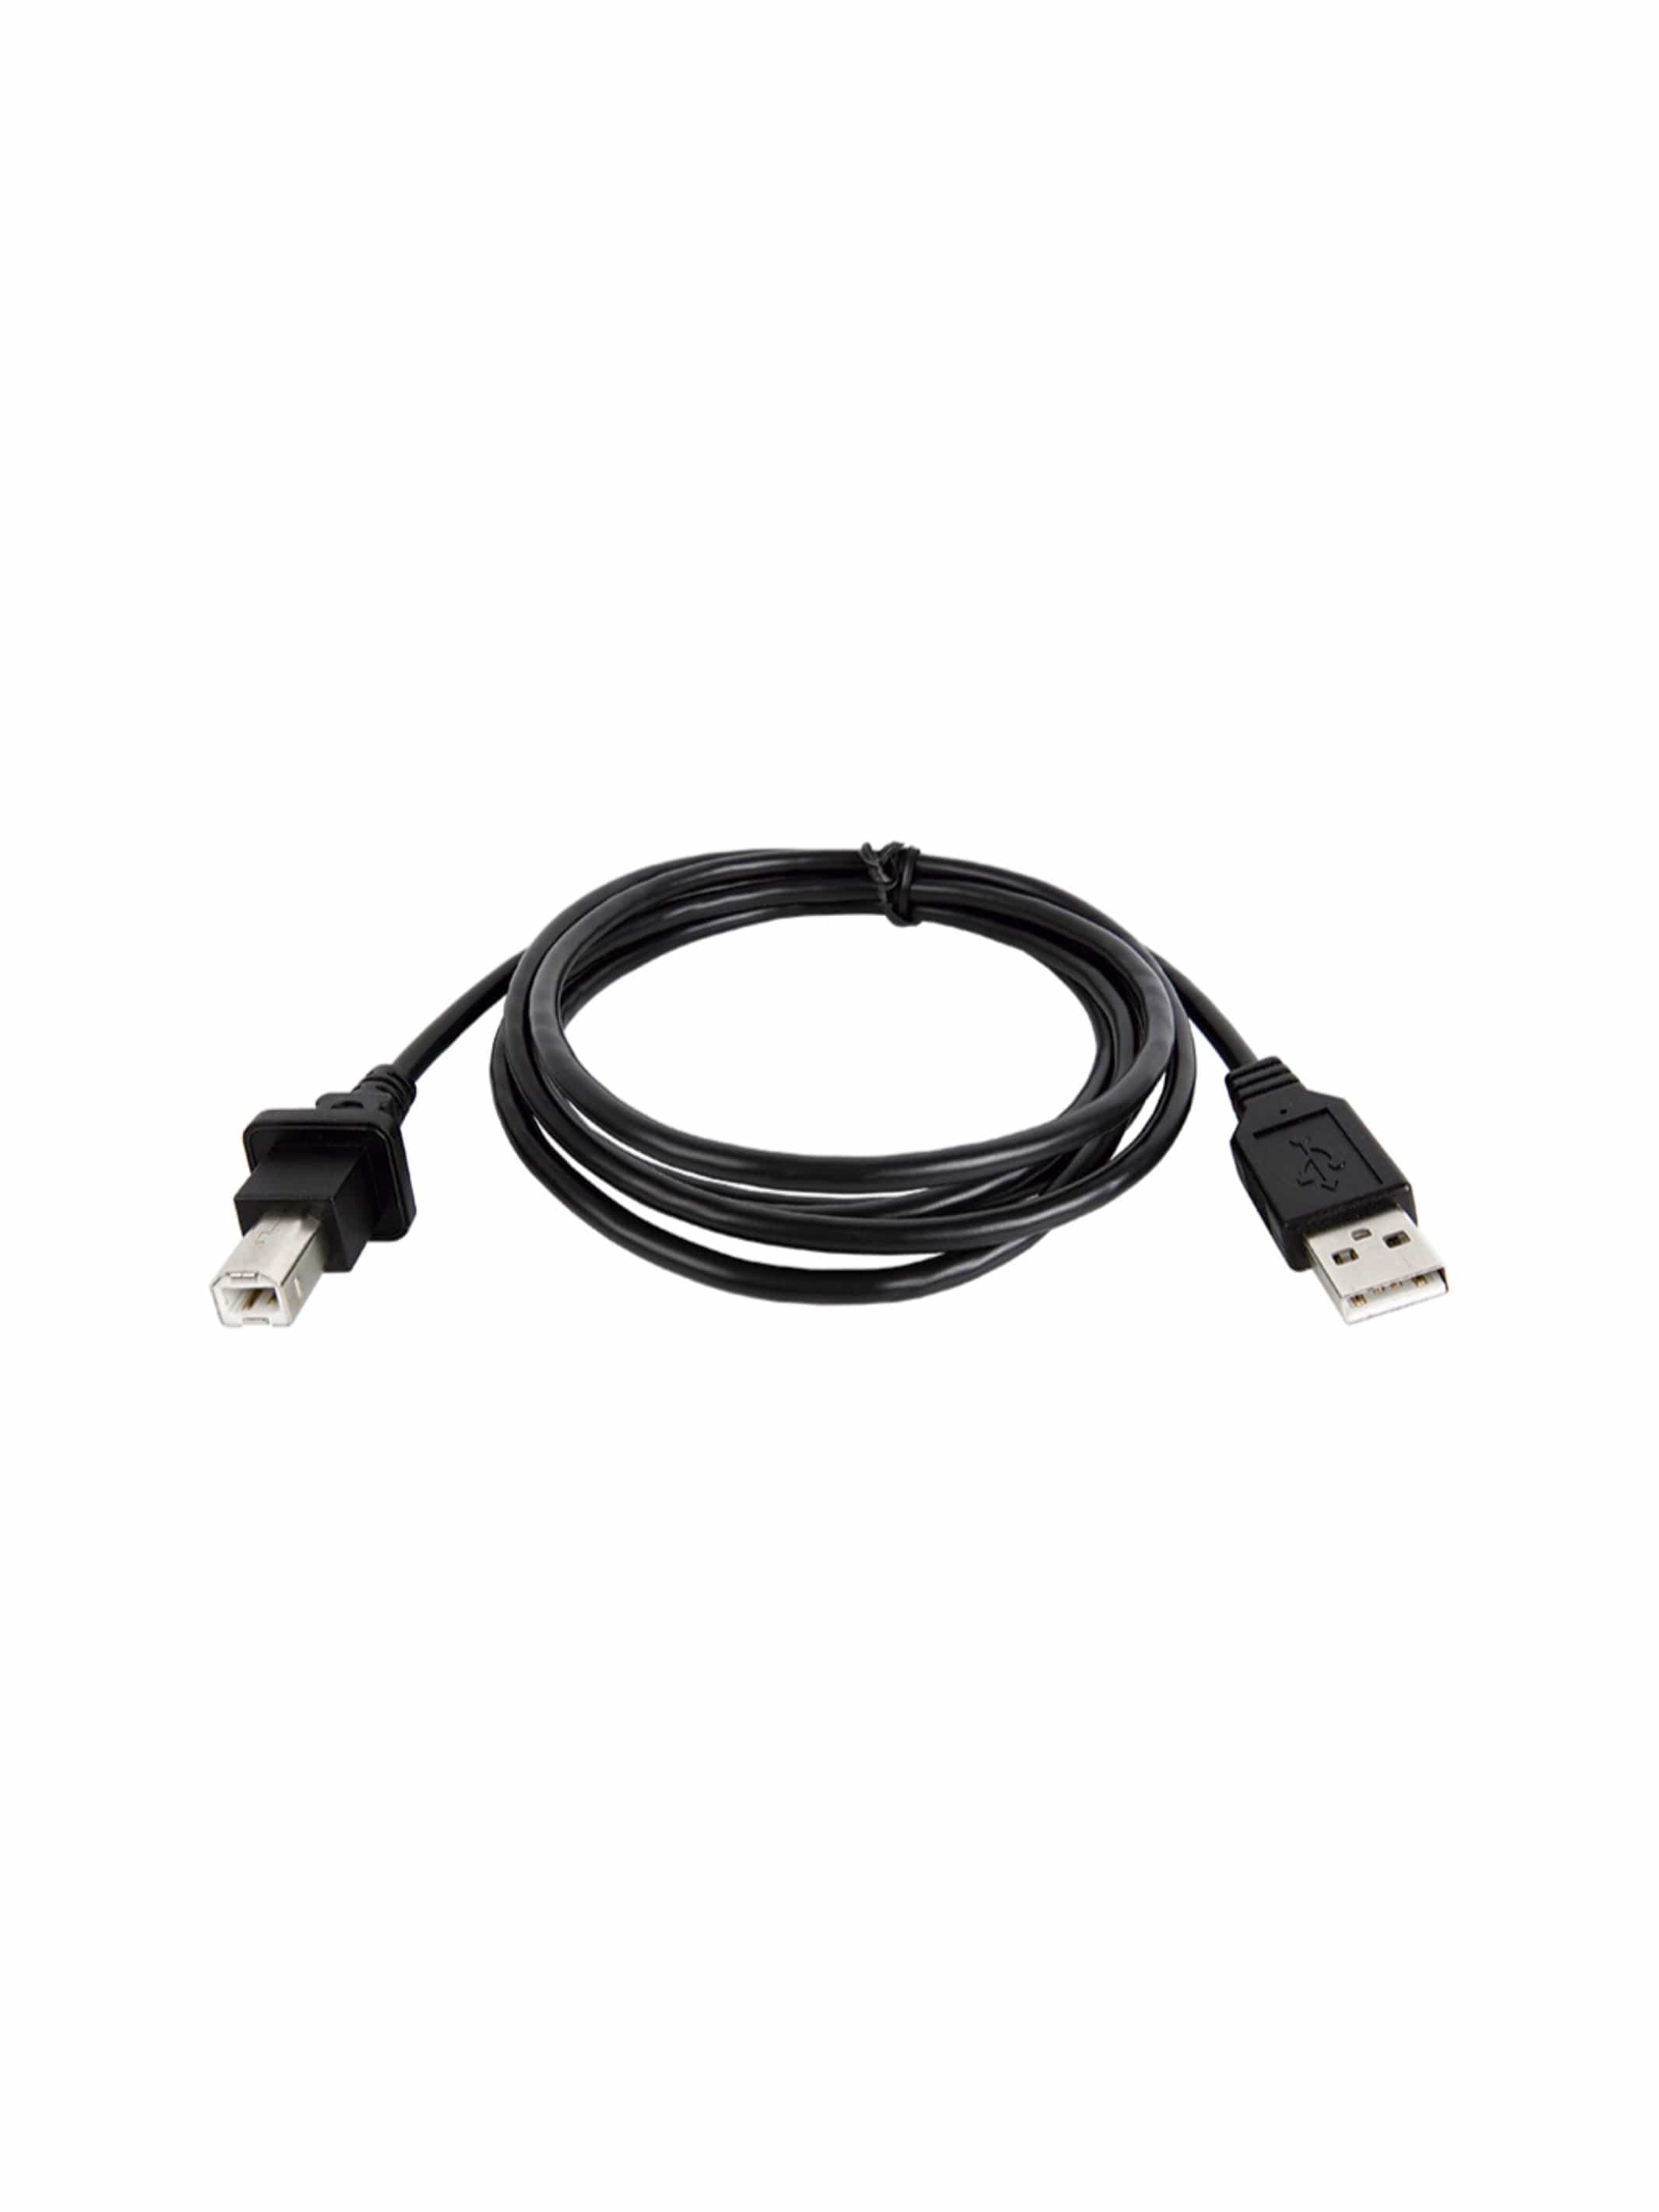 JDC107.9 Cojali Jaltest USB Cable - Bundle - Jaltest Agricultural & Construction, MH, Power Systems Diagnostic Kit